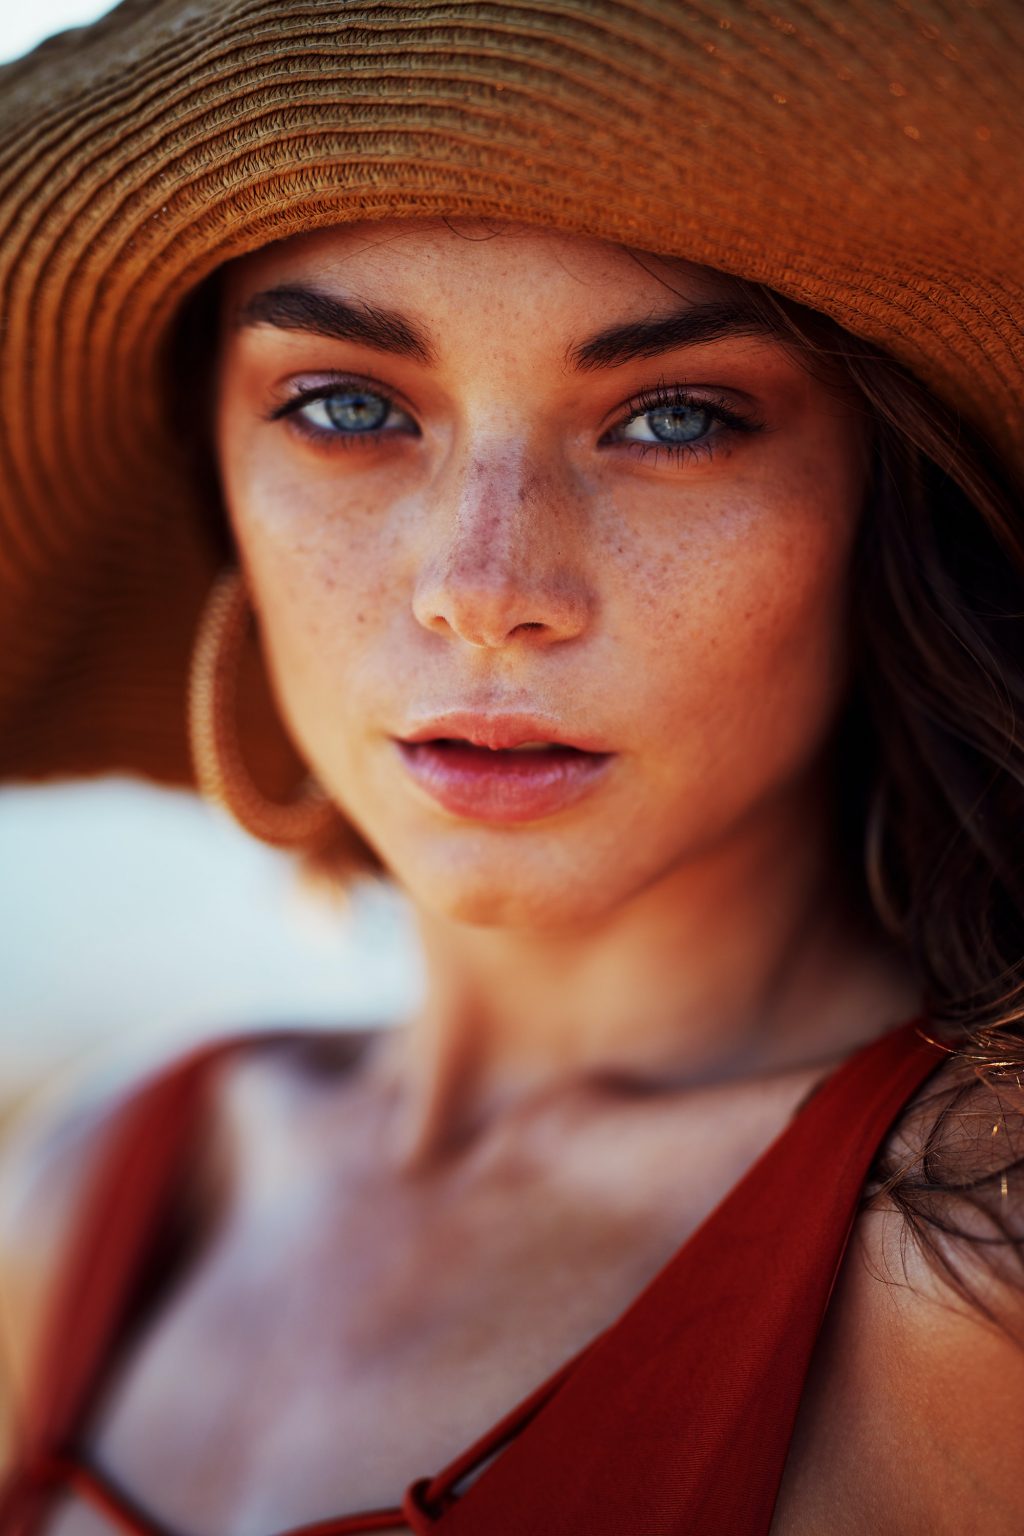 Das Bild zeigt eine junge hübsche Frau mit Sommersprossen und heller Haut.